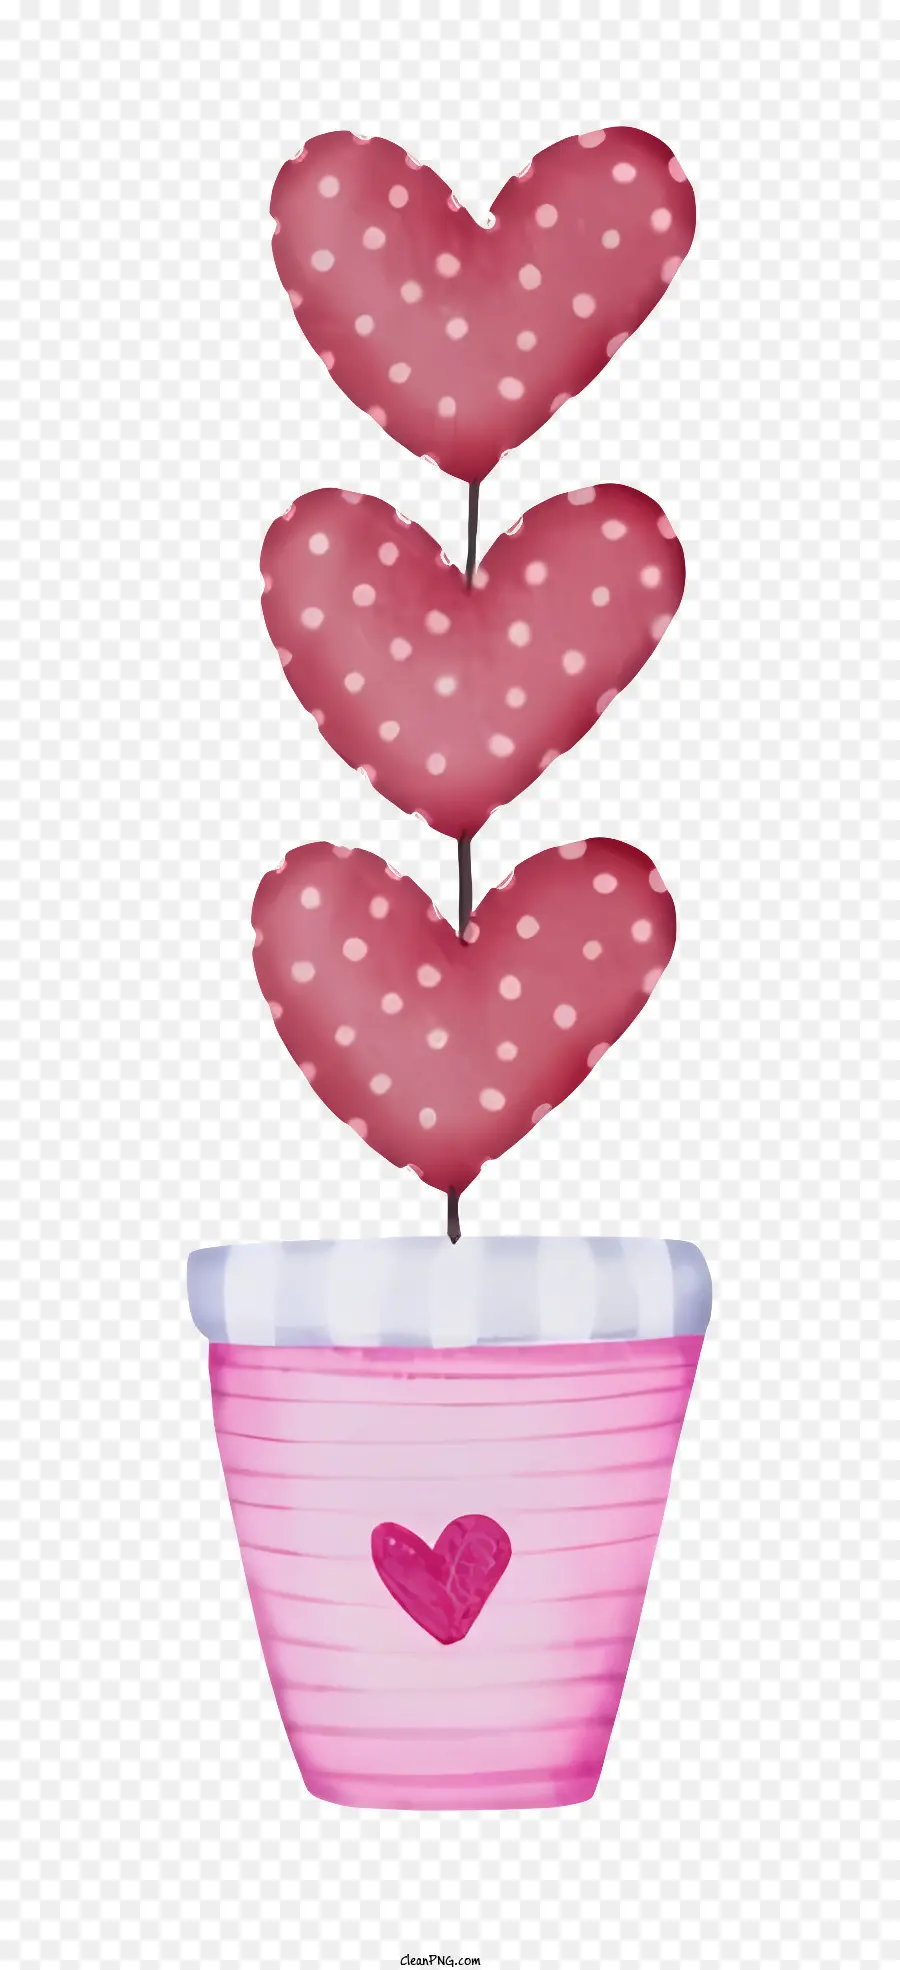 hồng nền - Một cây nhỏ hình trái tim trong nồi màu hồng